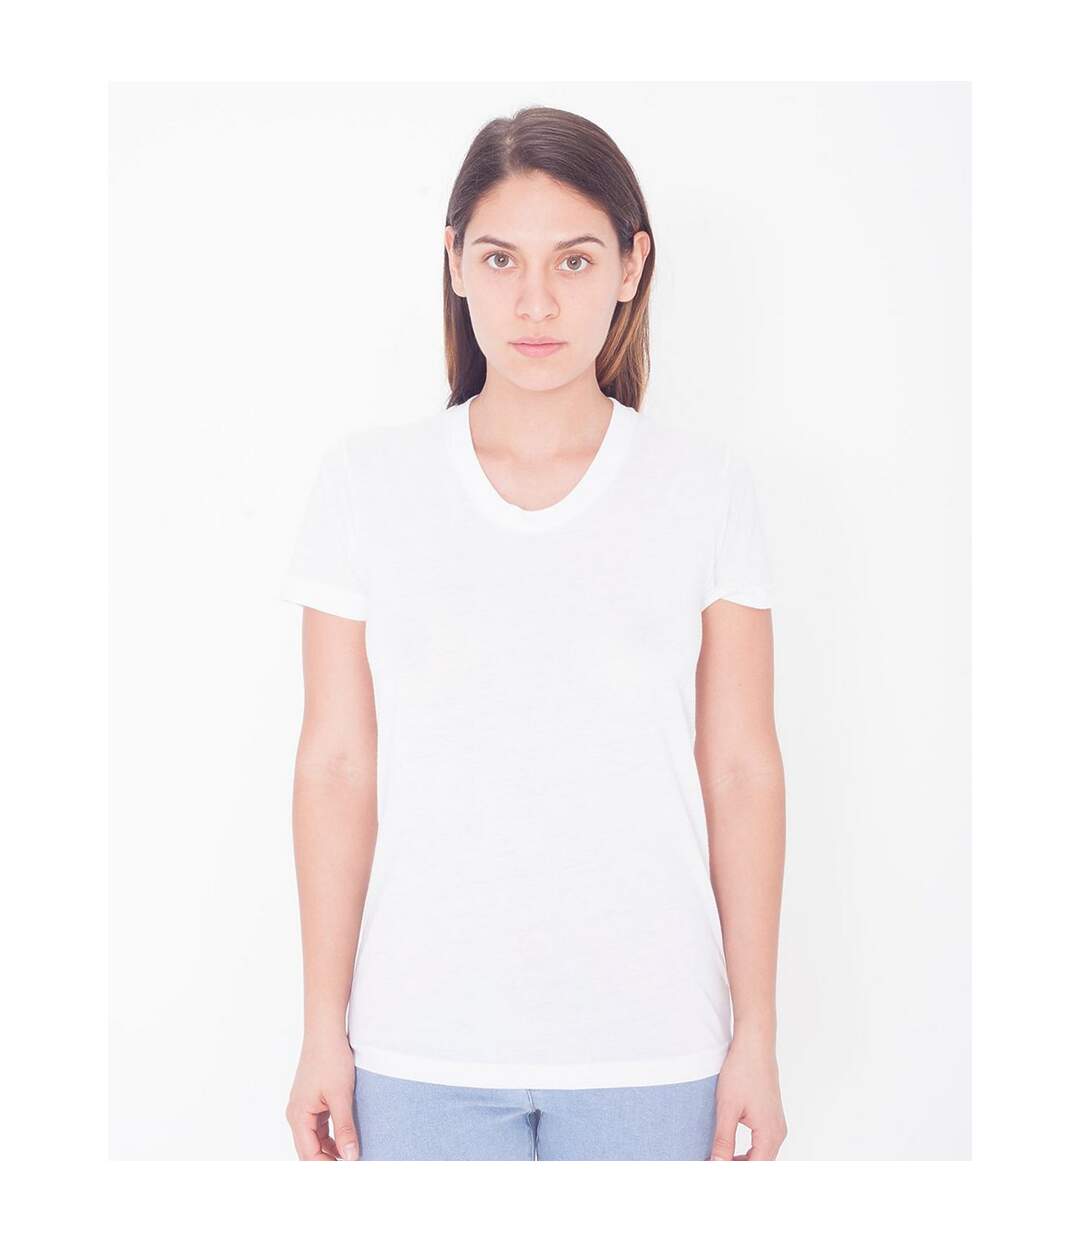 American Apparel T-shirt à manches courtes pour femme